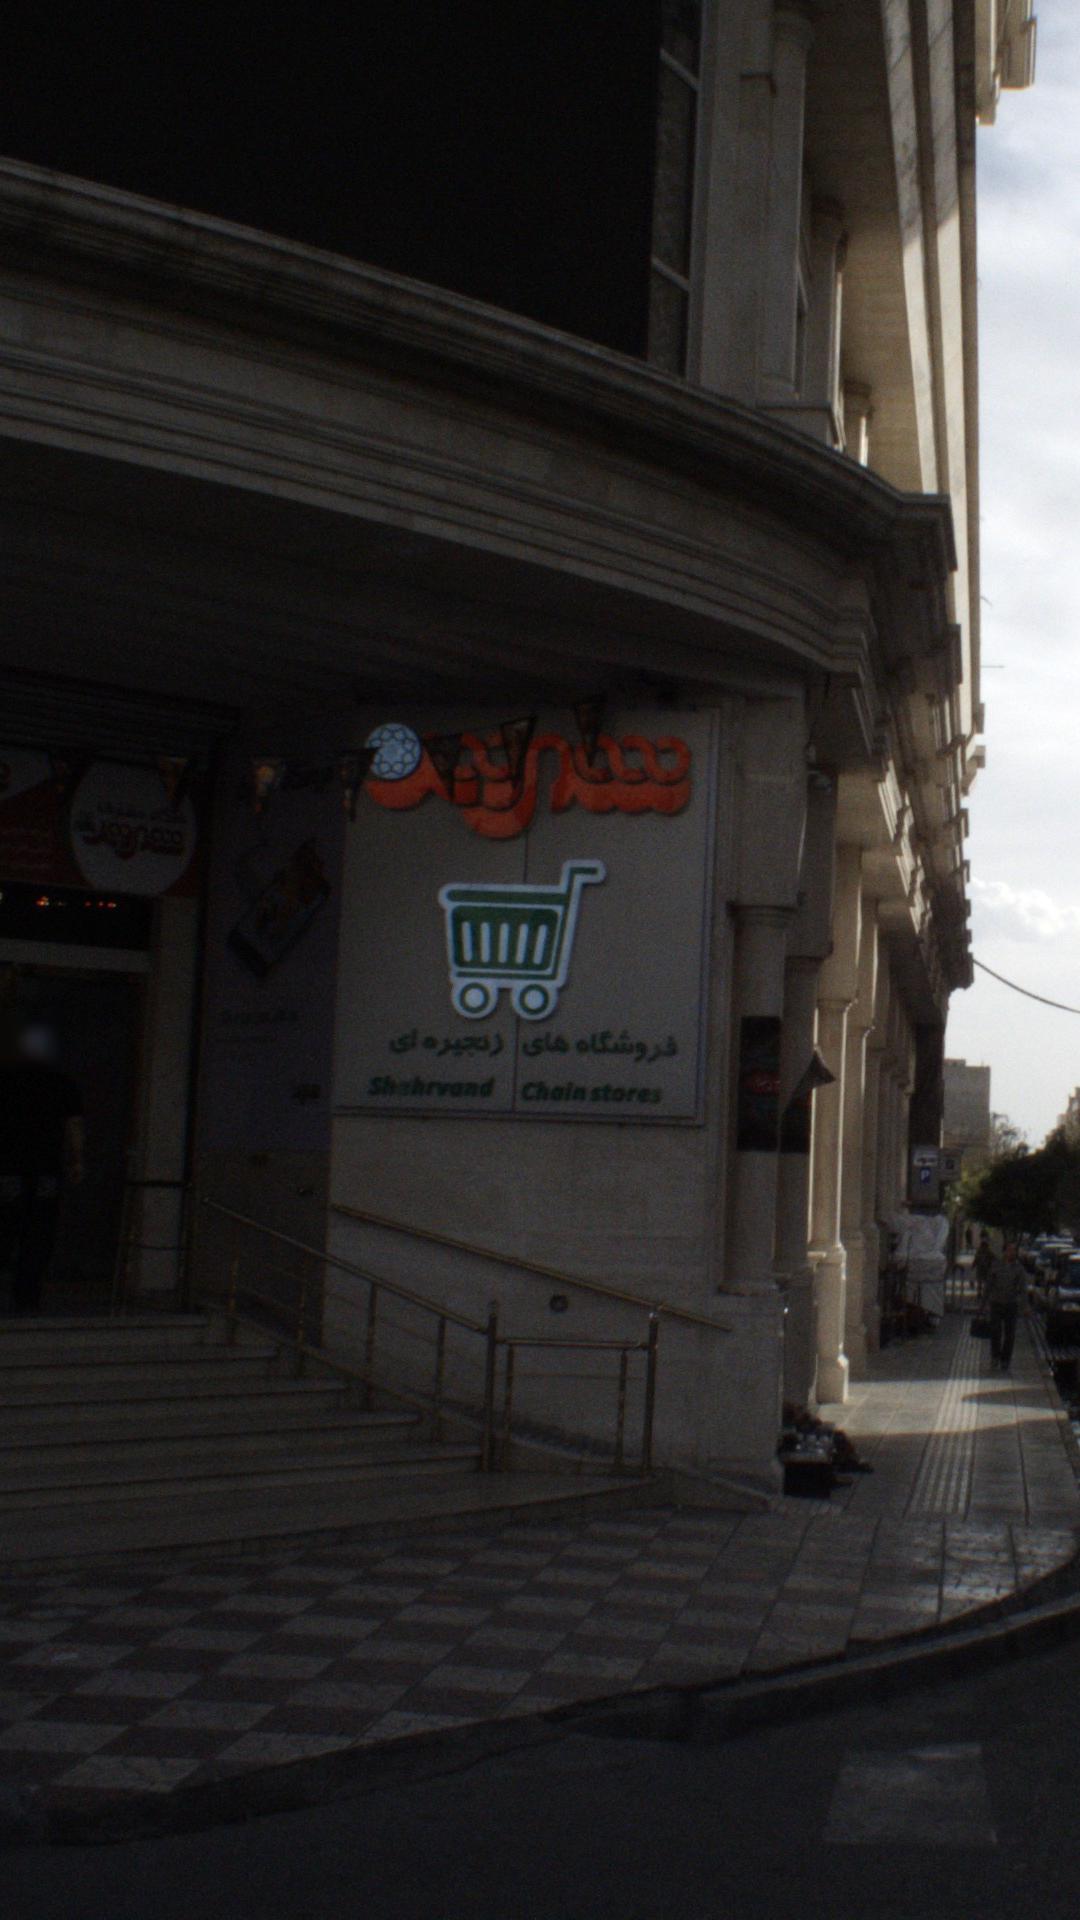 فروشگاه شهروند تهرانسر